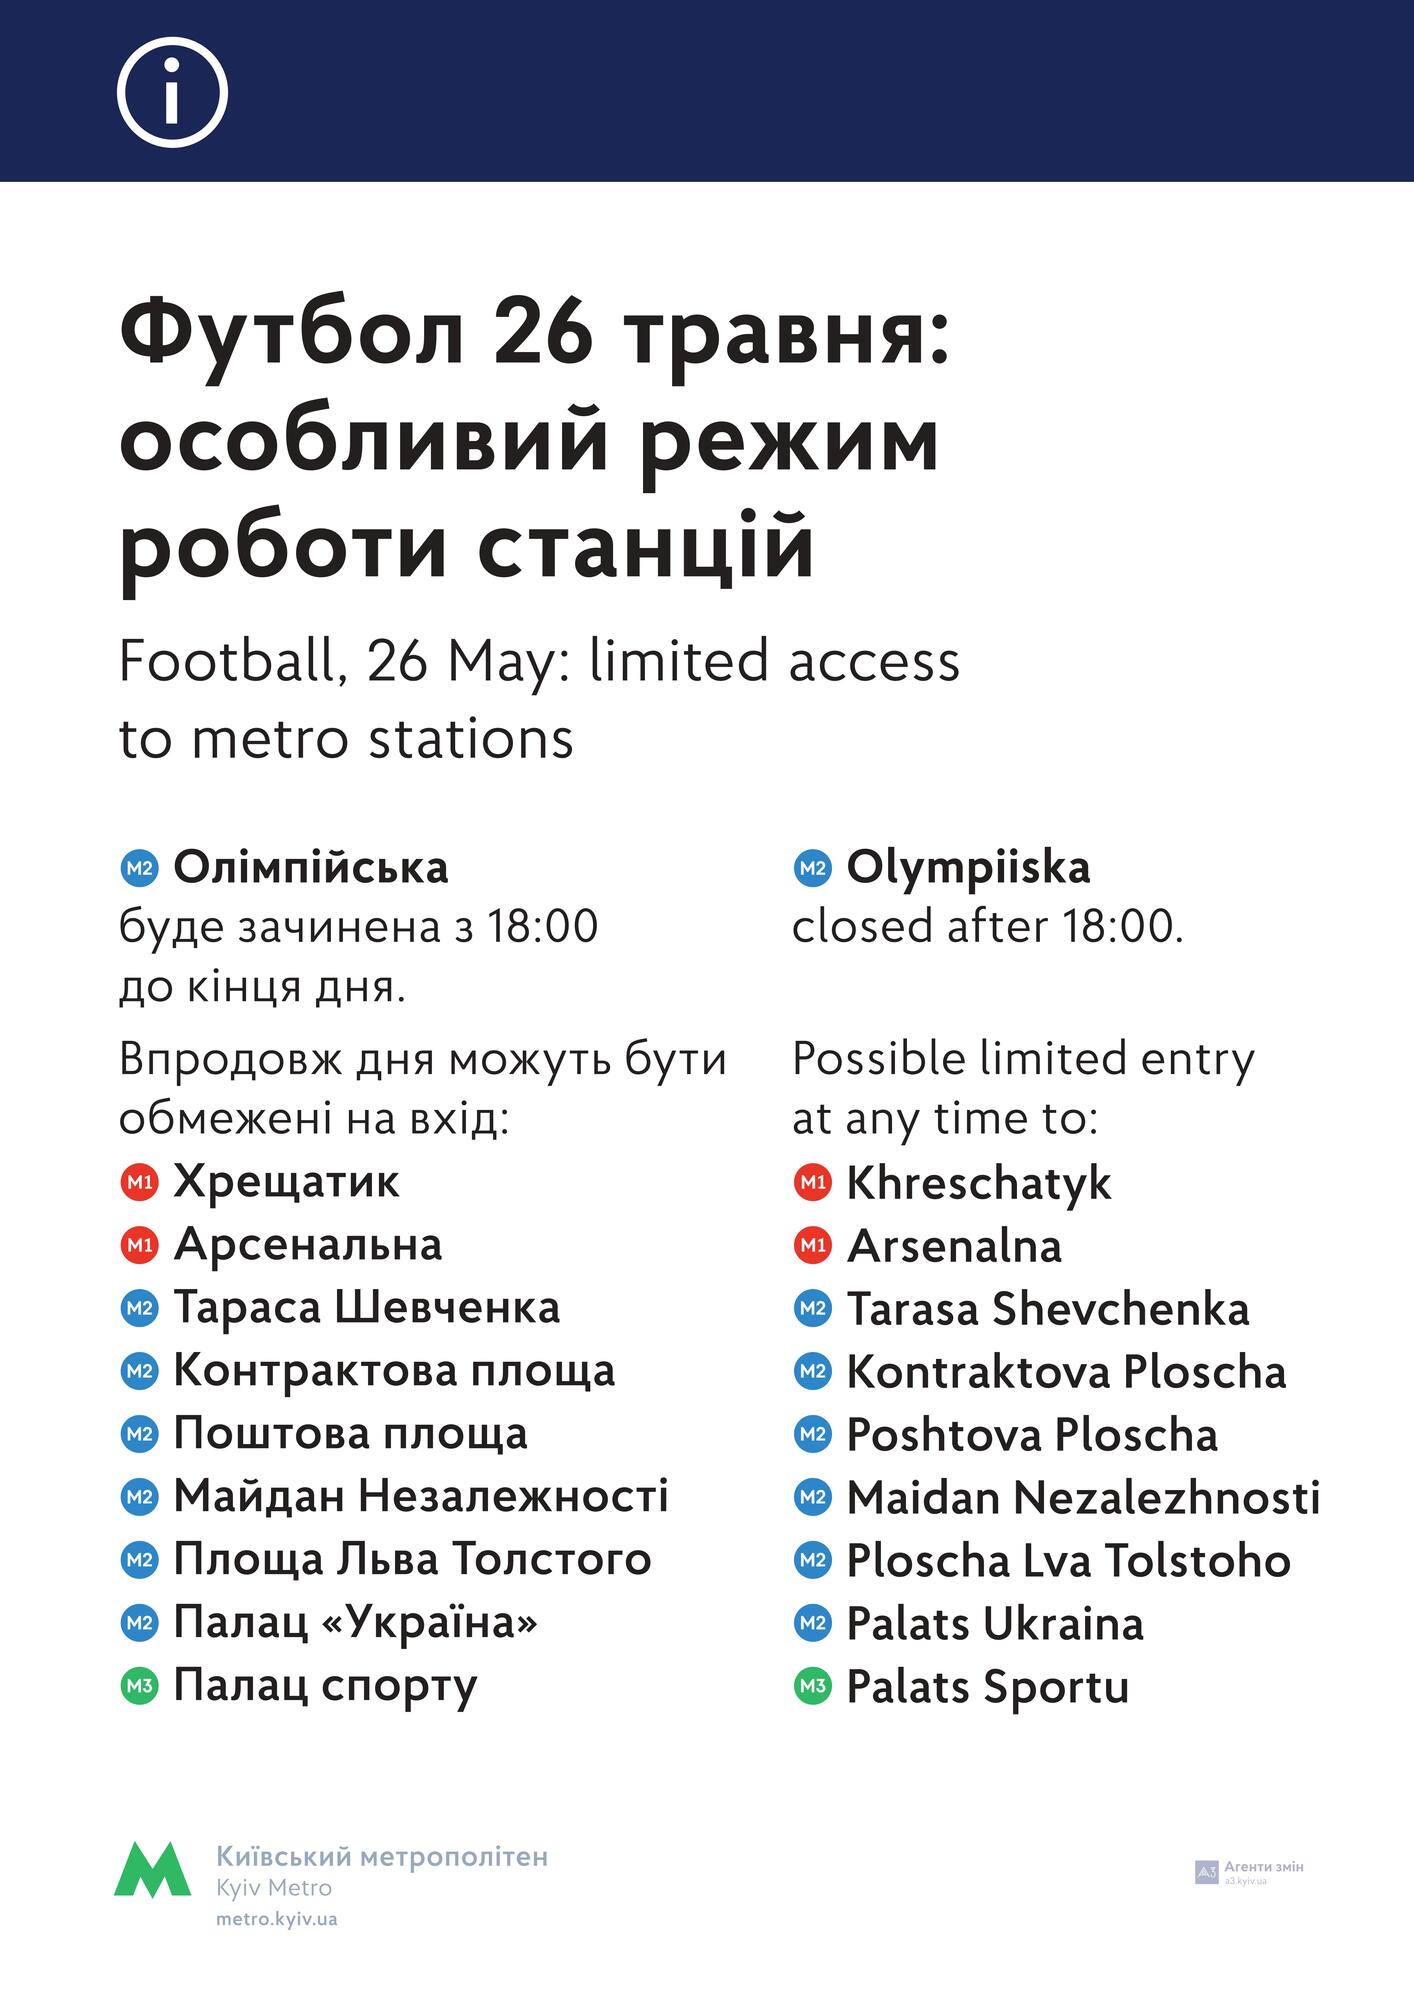 Финал ЛЧ в Киеве: метро изменит расписание движения